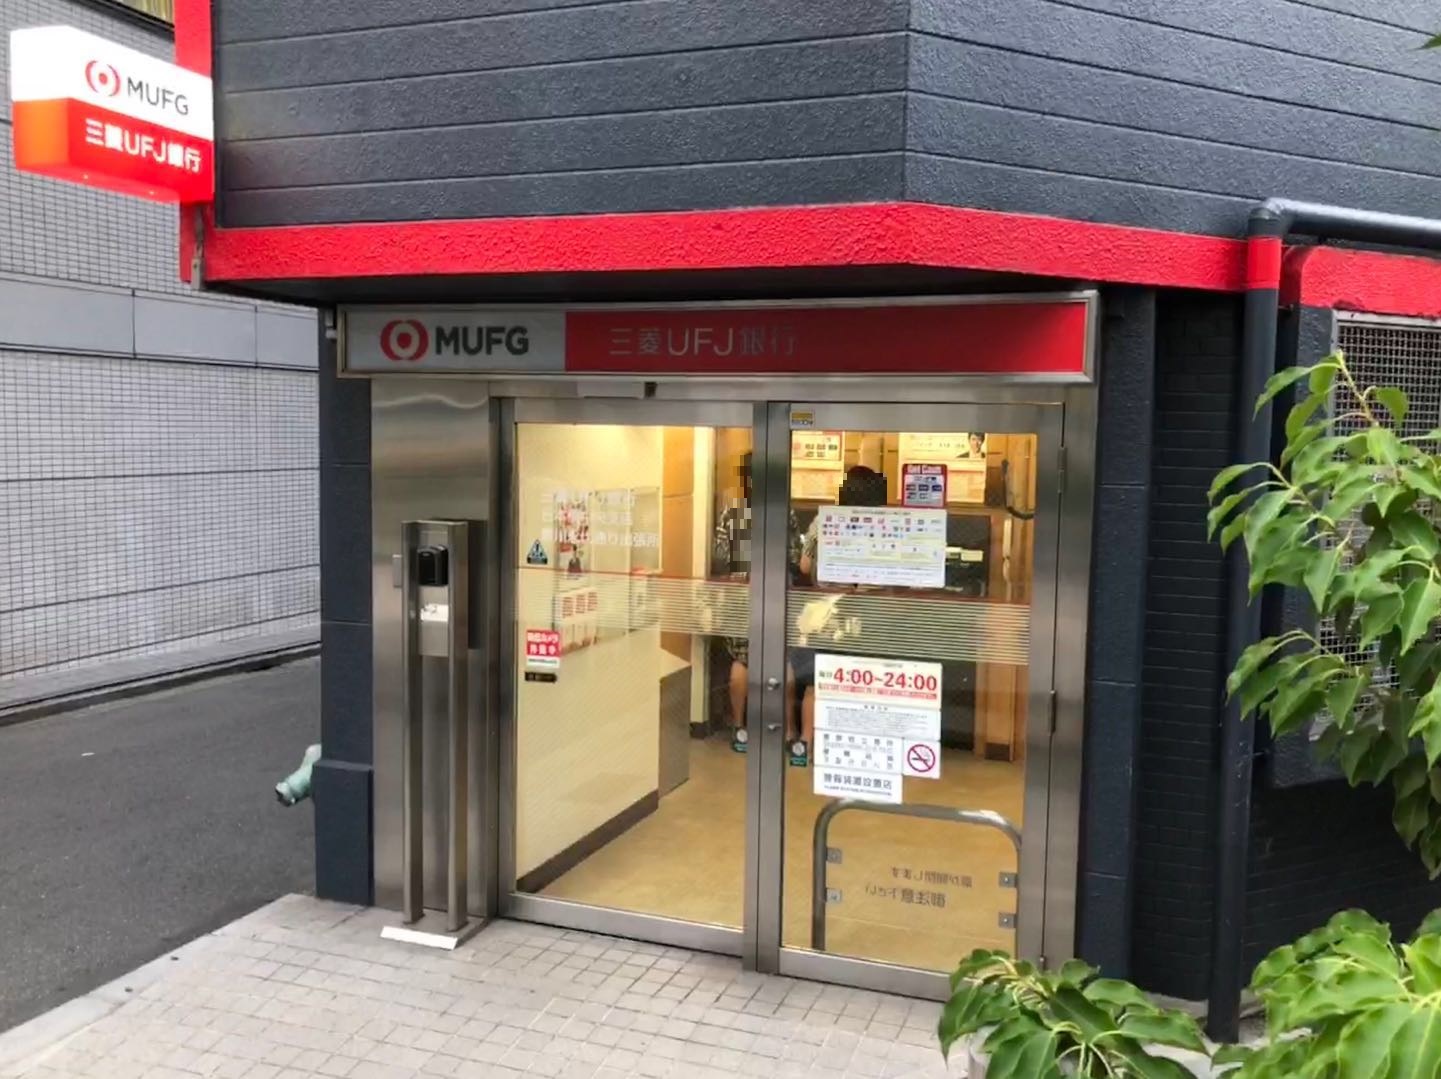 三菱ufj銀行 新富町支店 八丁堀 Com